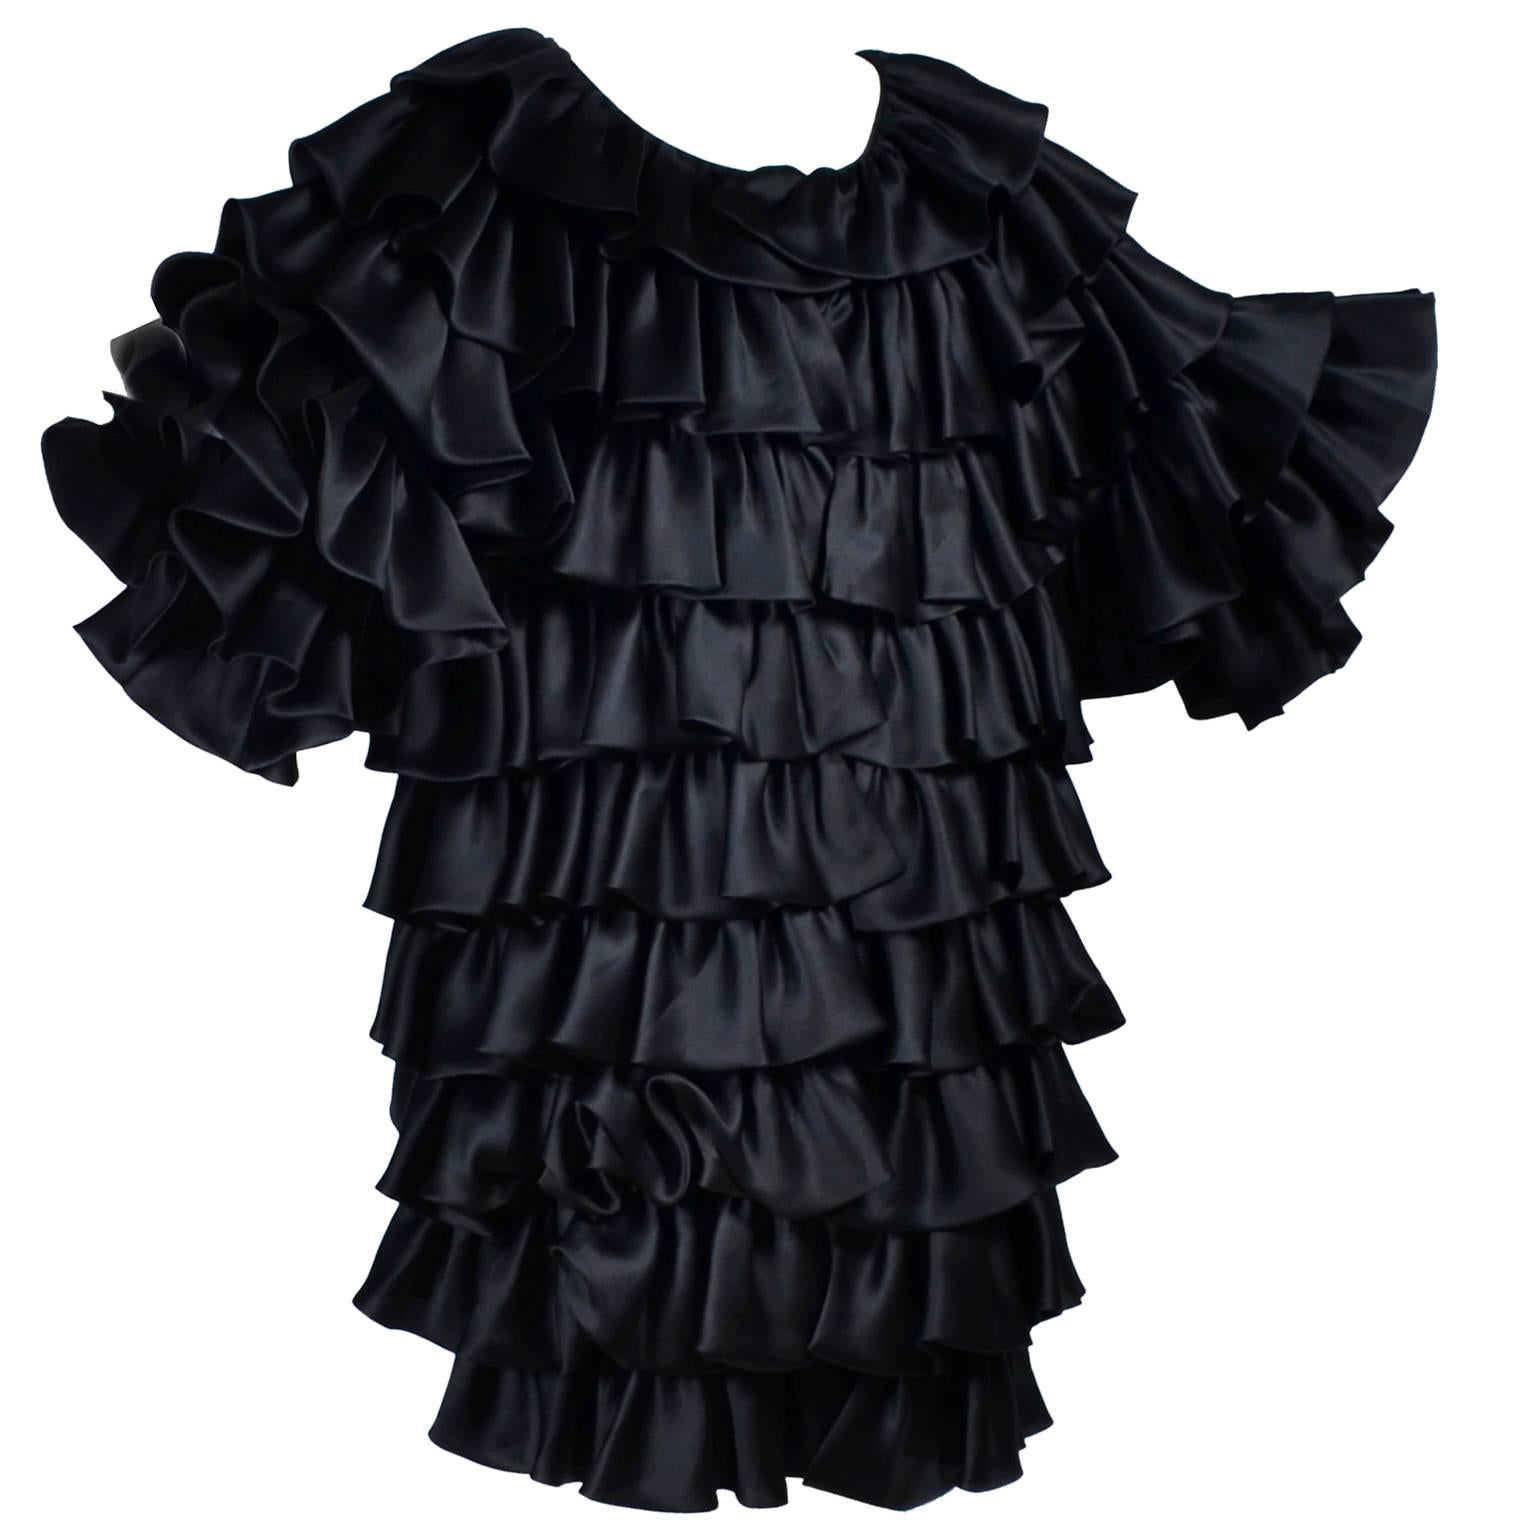 Vintage Oscar de la Renta Silk Evening Coat with Black Ruffles Lined in Organza